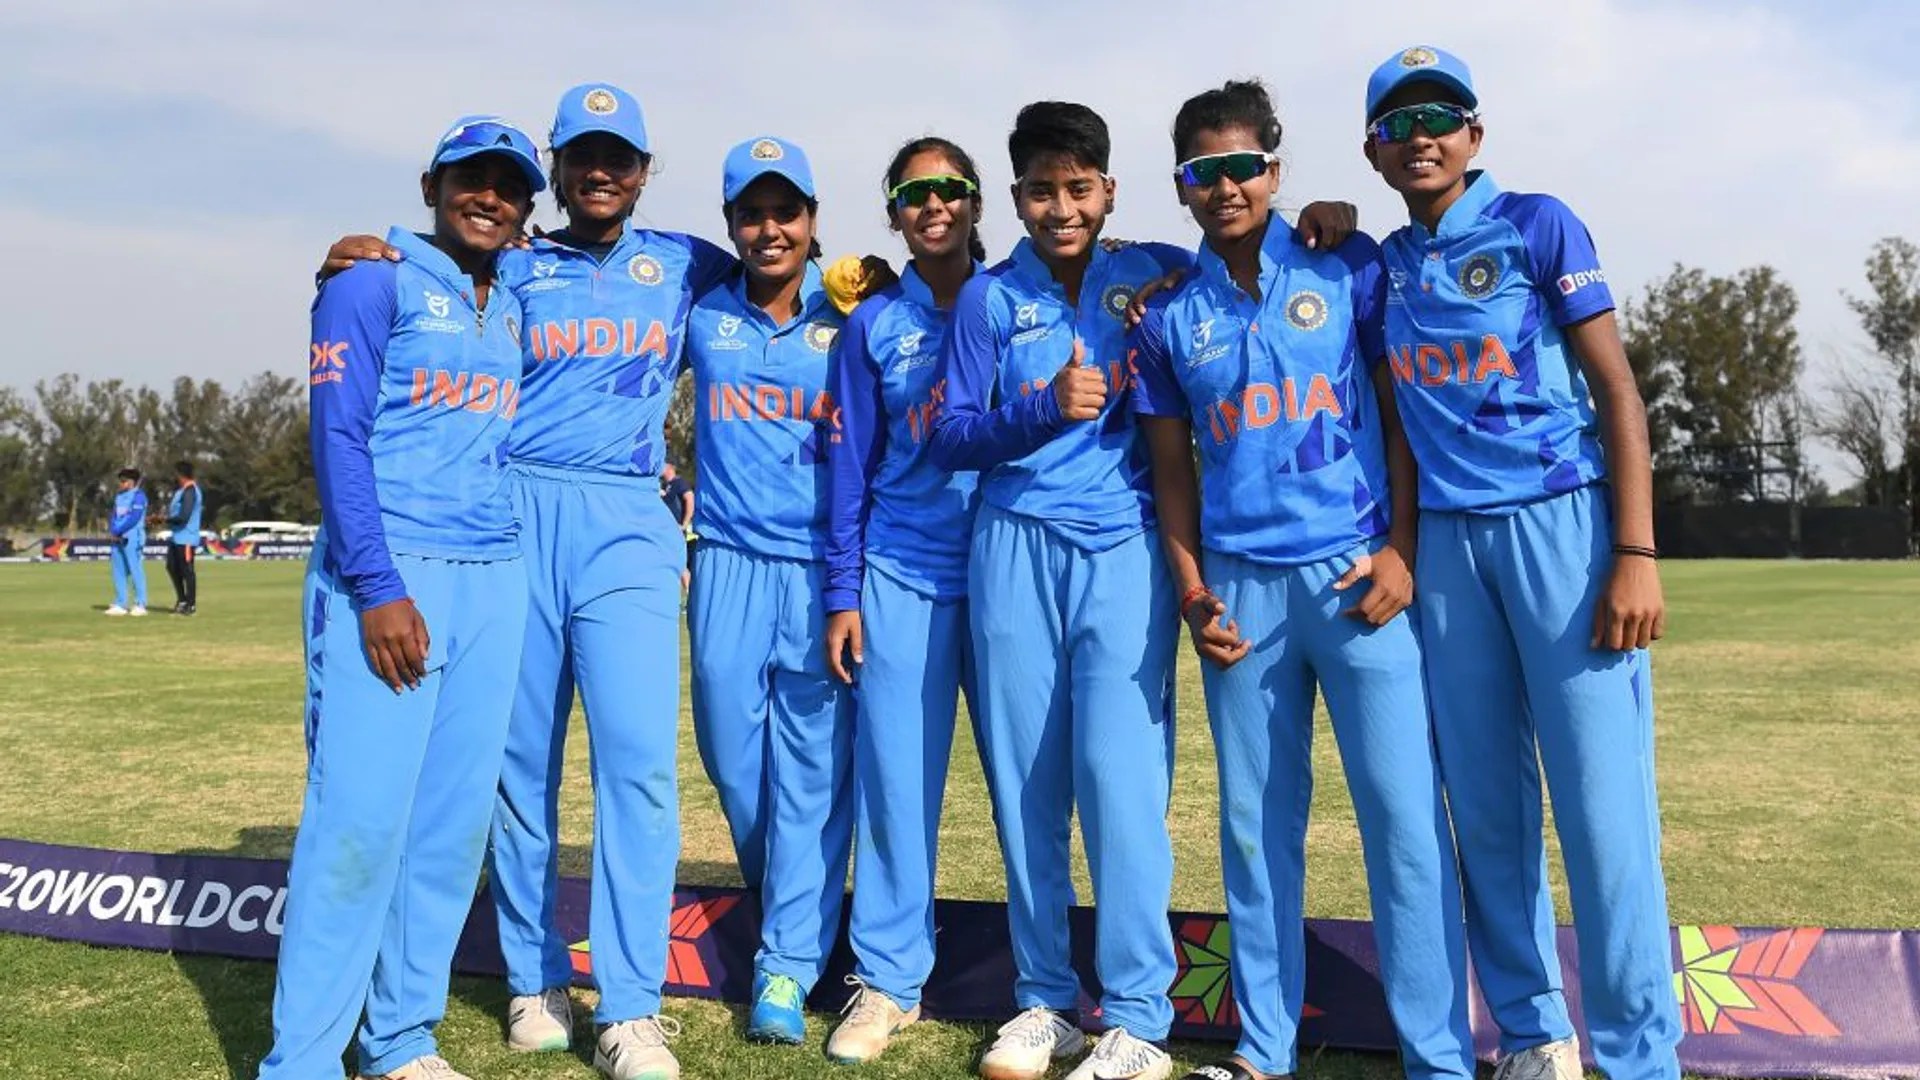 U19 Kadınlar WC Yarı Finalleri: Hindistan, HISTORY'yi yazıyor, Yarı finalde NewZealand ile karşılaşacak, Mighty Australia yenilmemiş İngiltere ile karşılaşacak: Canlı Güncellemeleri Takip Edin